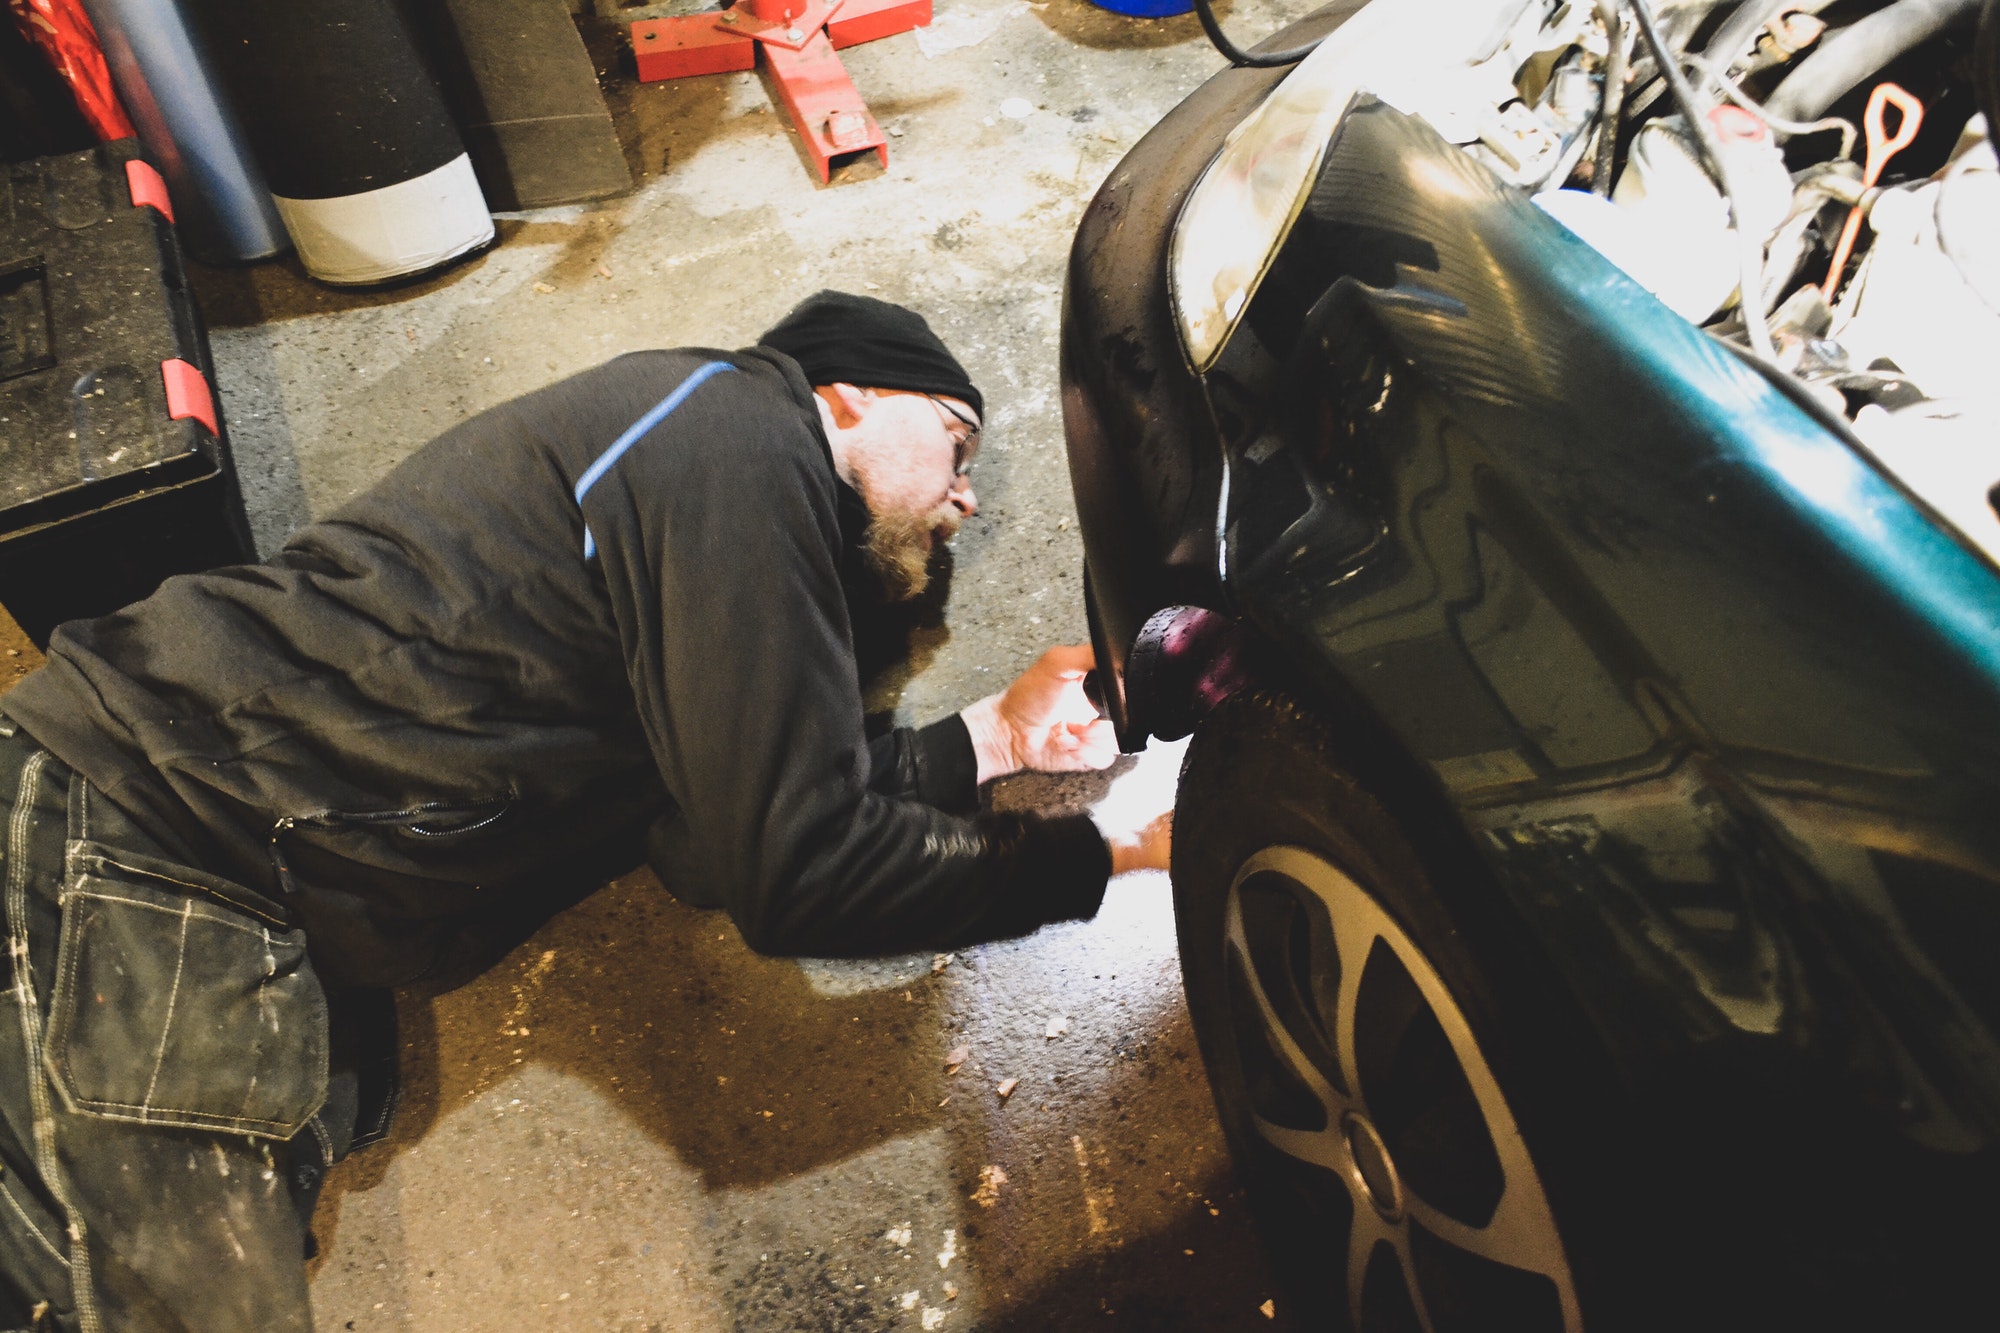 Repairing the car